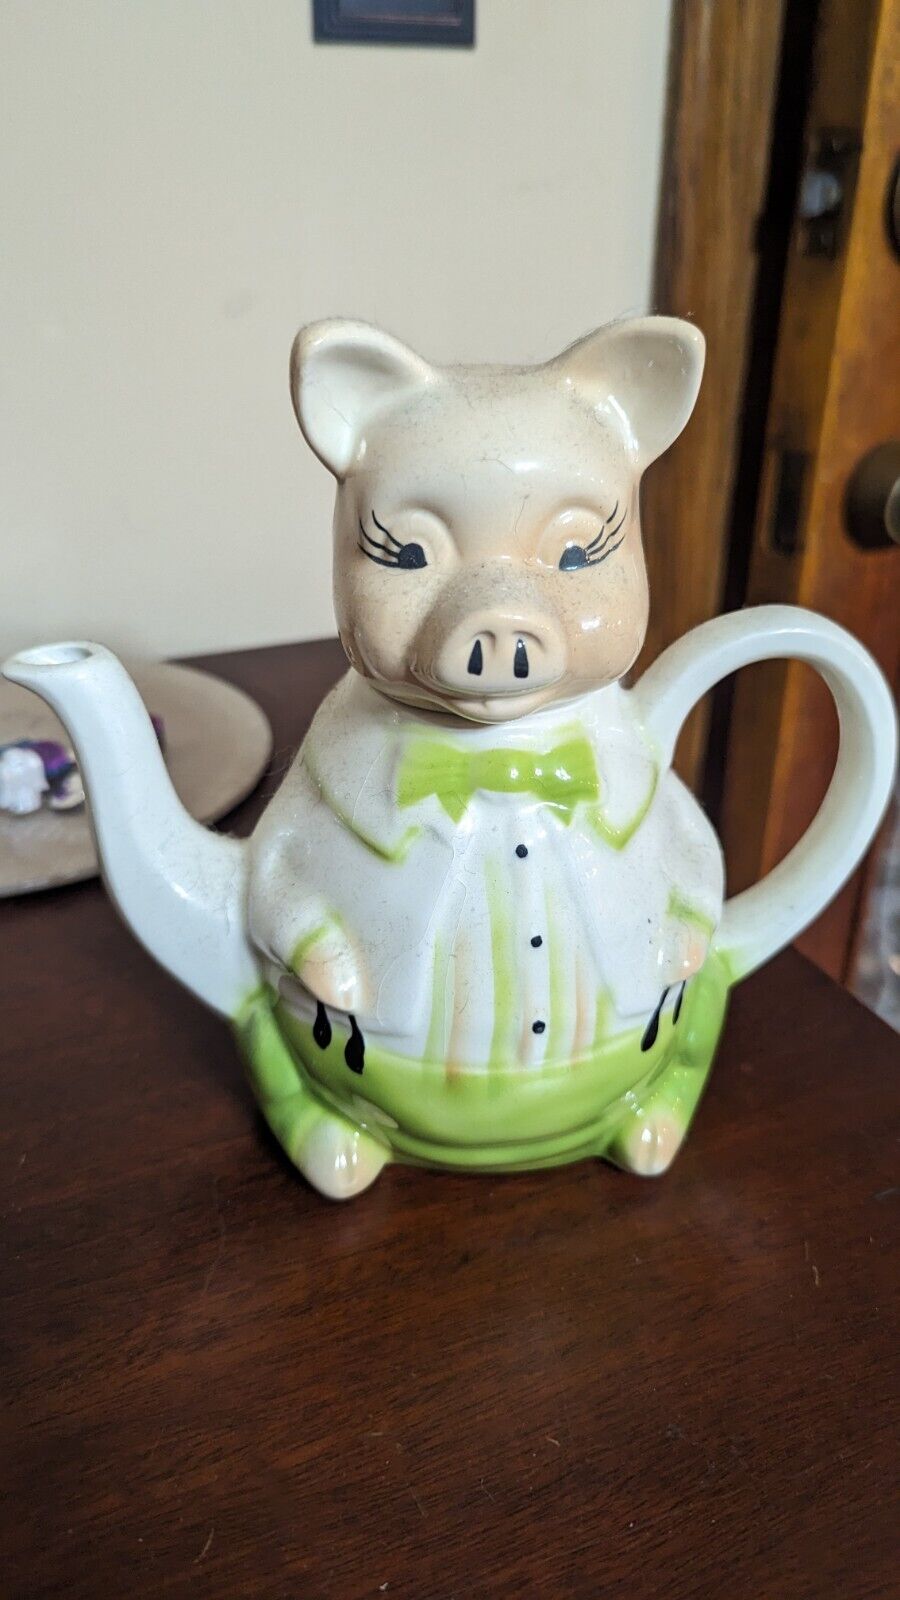 Tony Wood Ceramic Master Piggy Pig 7” Tea Pot Made in England